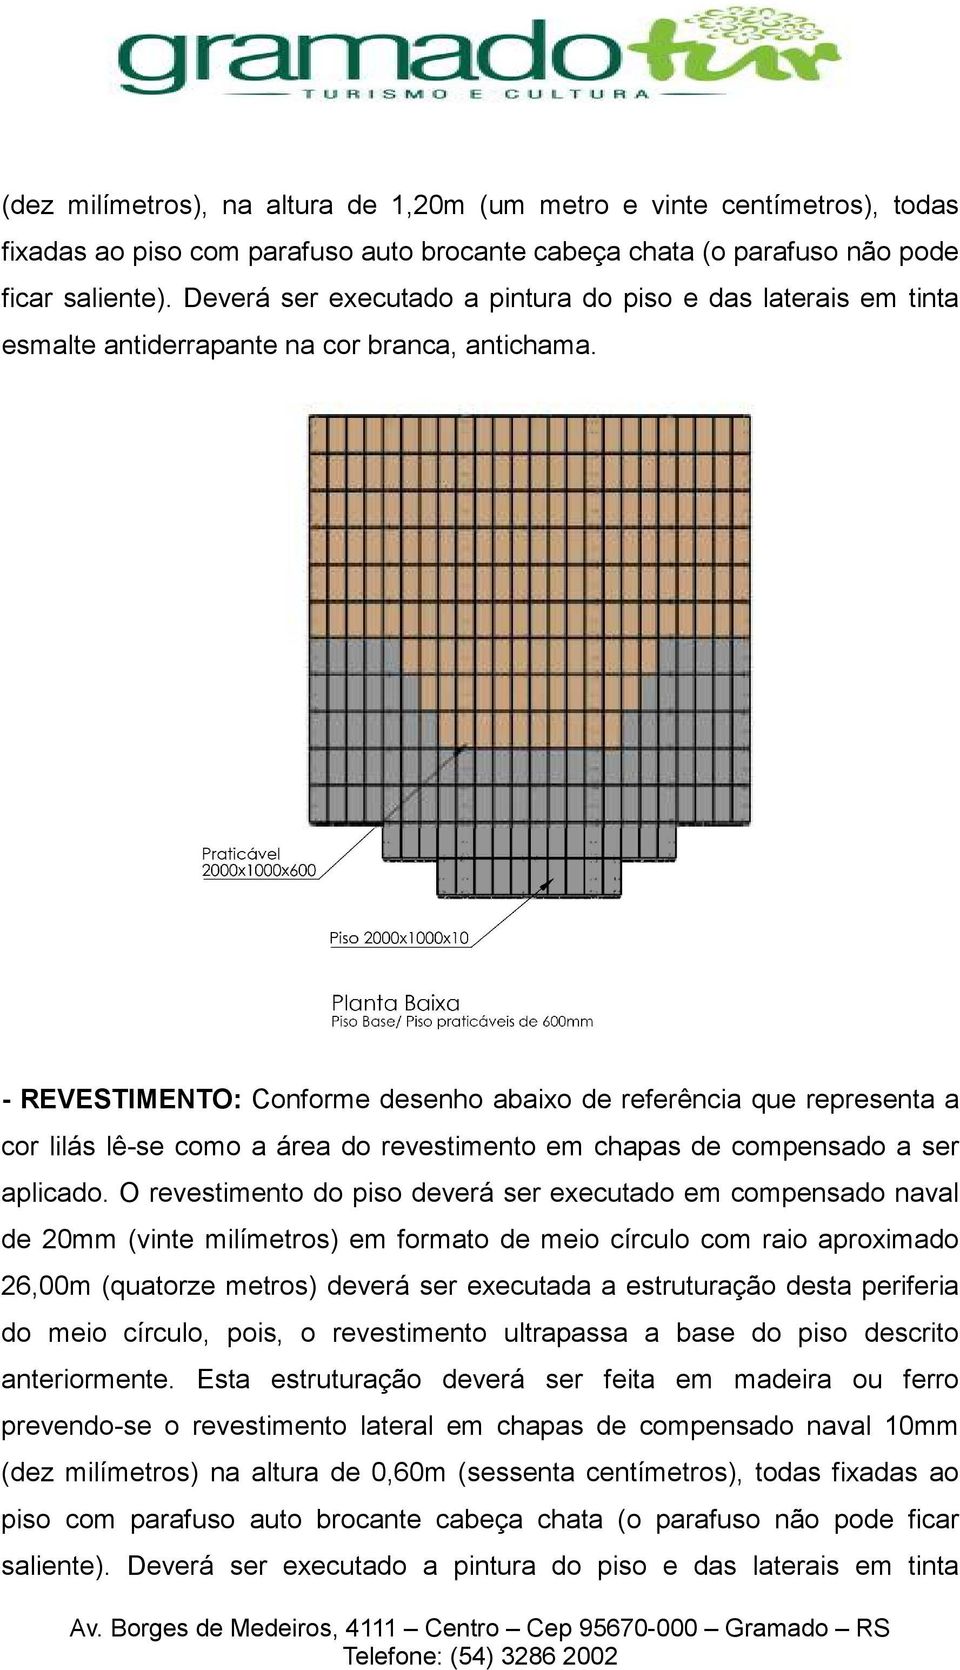 - REVESTIMENTO: Conforme desenho abaixo de referência que representa a cor lilás lê-se como a área do revestimento em chapas de compensado a ser aplicado.